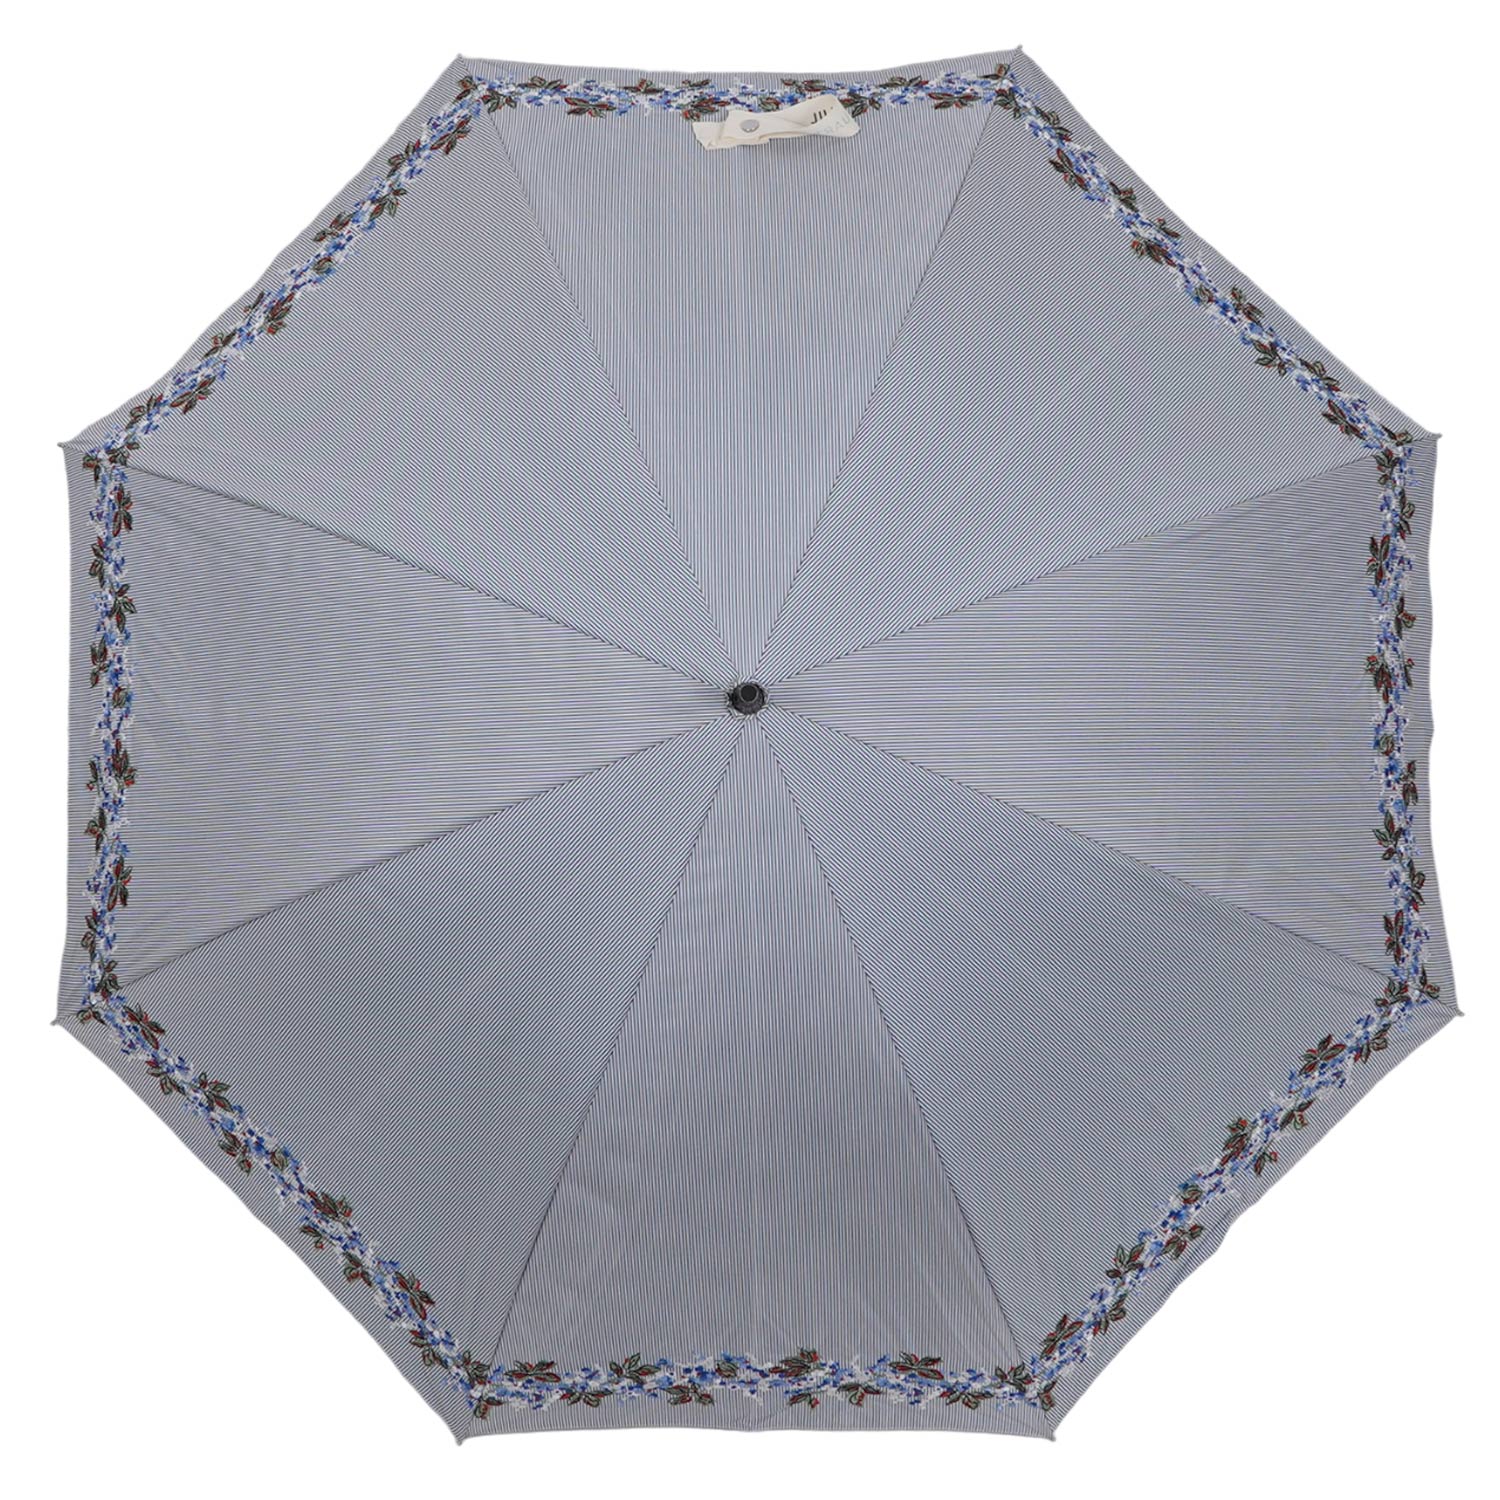 JILLSTUART 日傘 晴雨兼用 長傘 レディース UVカット 遮蔽 刺繍 21014 母の日 ...